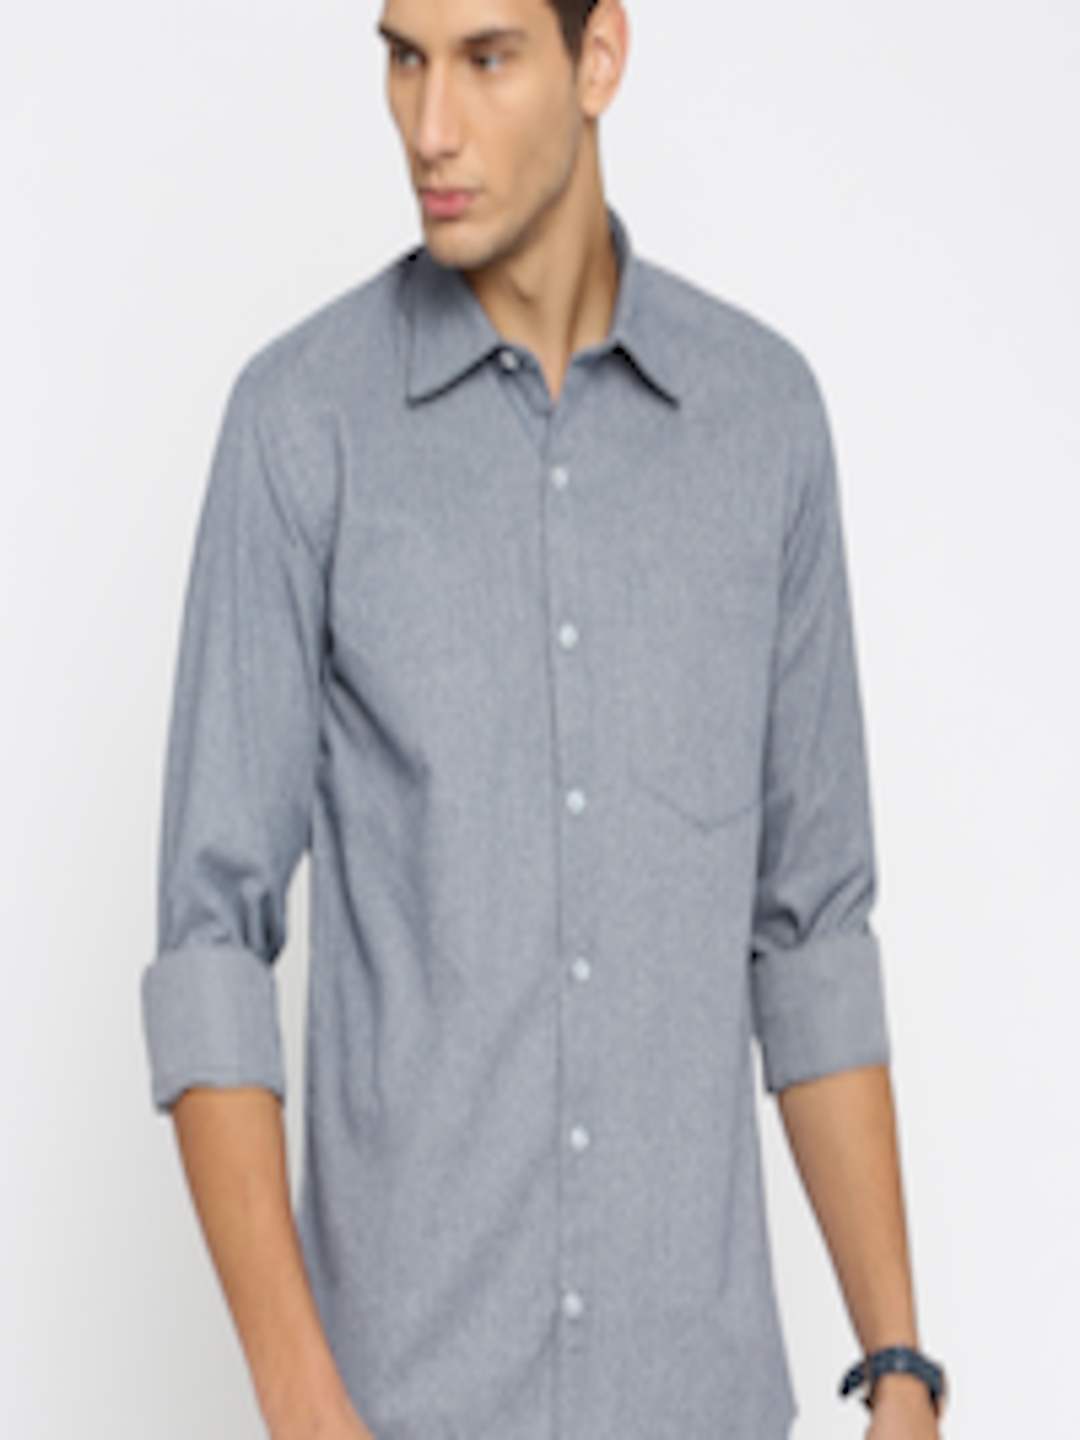 Buy American Crew Men Blue Slim Fit Self Design Casual Shirt - Shirts ...